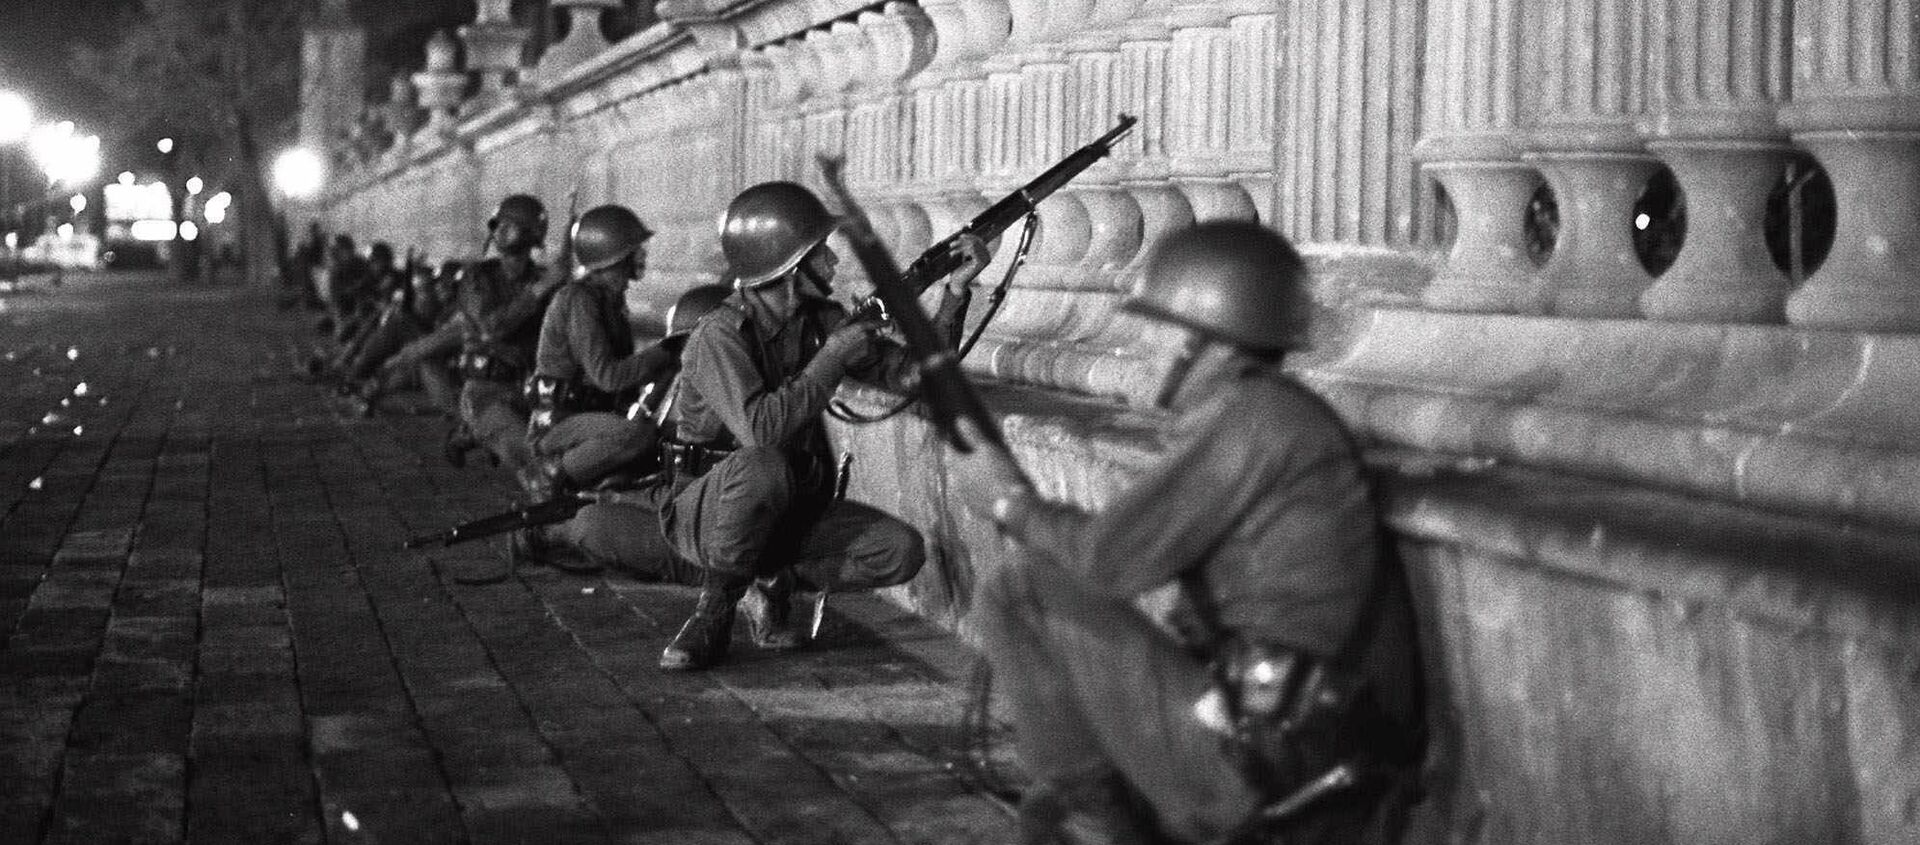 Soldados del Ejército mexicano en la región de la plaza de las Tres Culturas la noche del 2 de octubre de 1968 - Sputnik Mundo, 1920, 01.10.2018